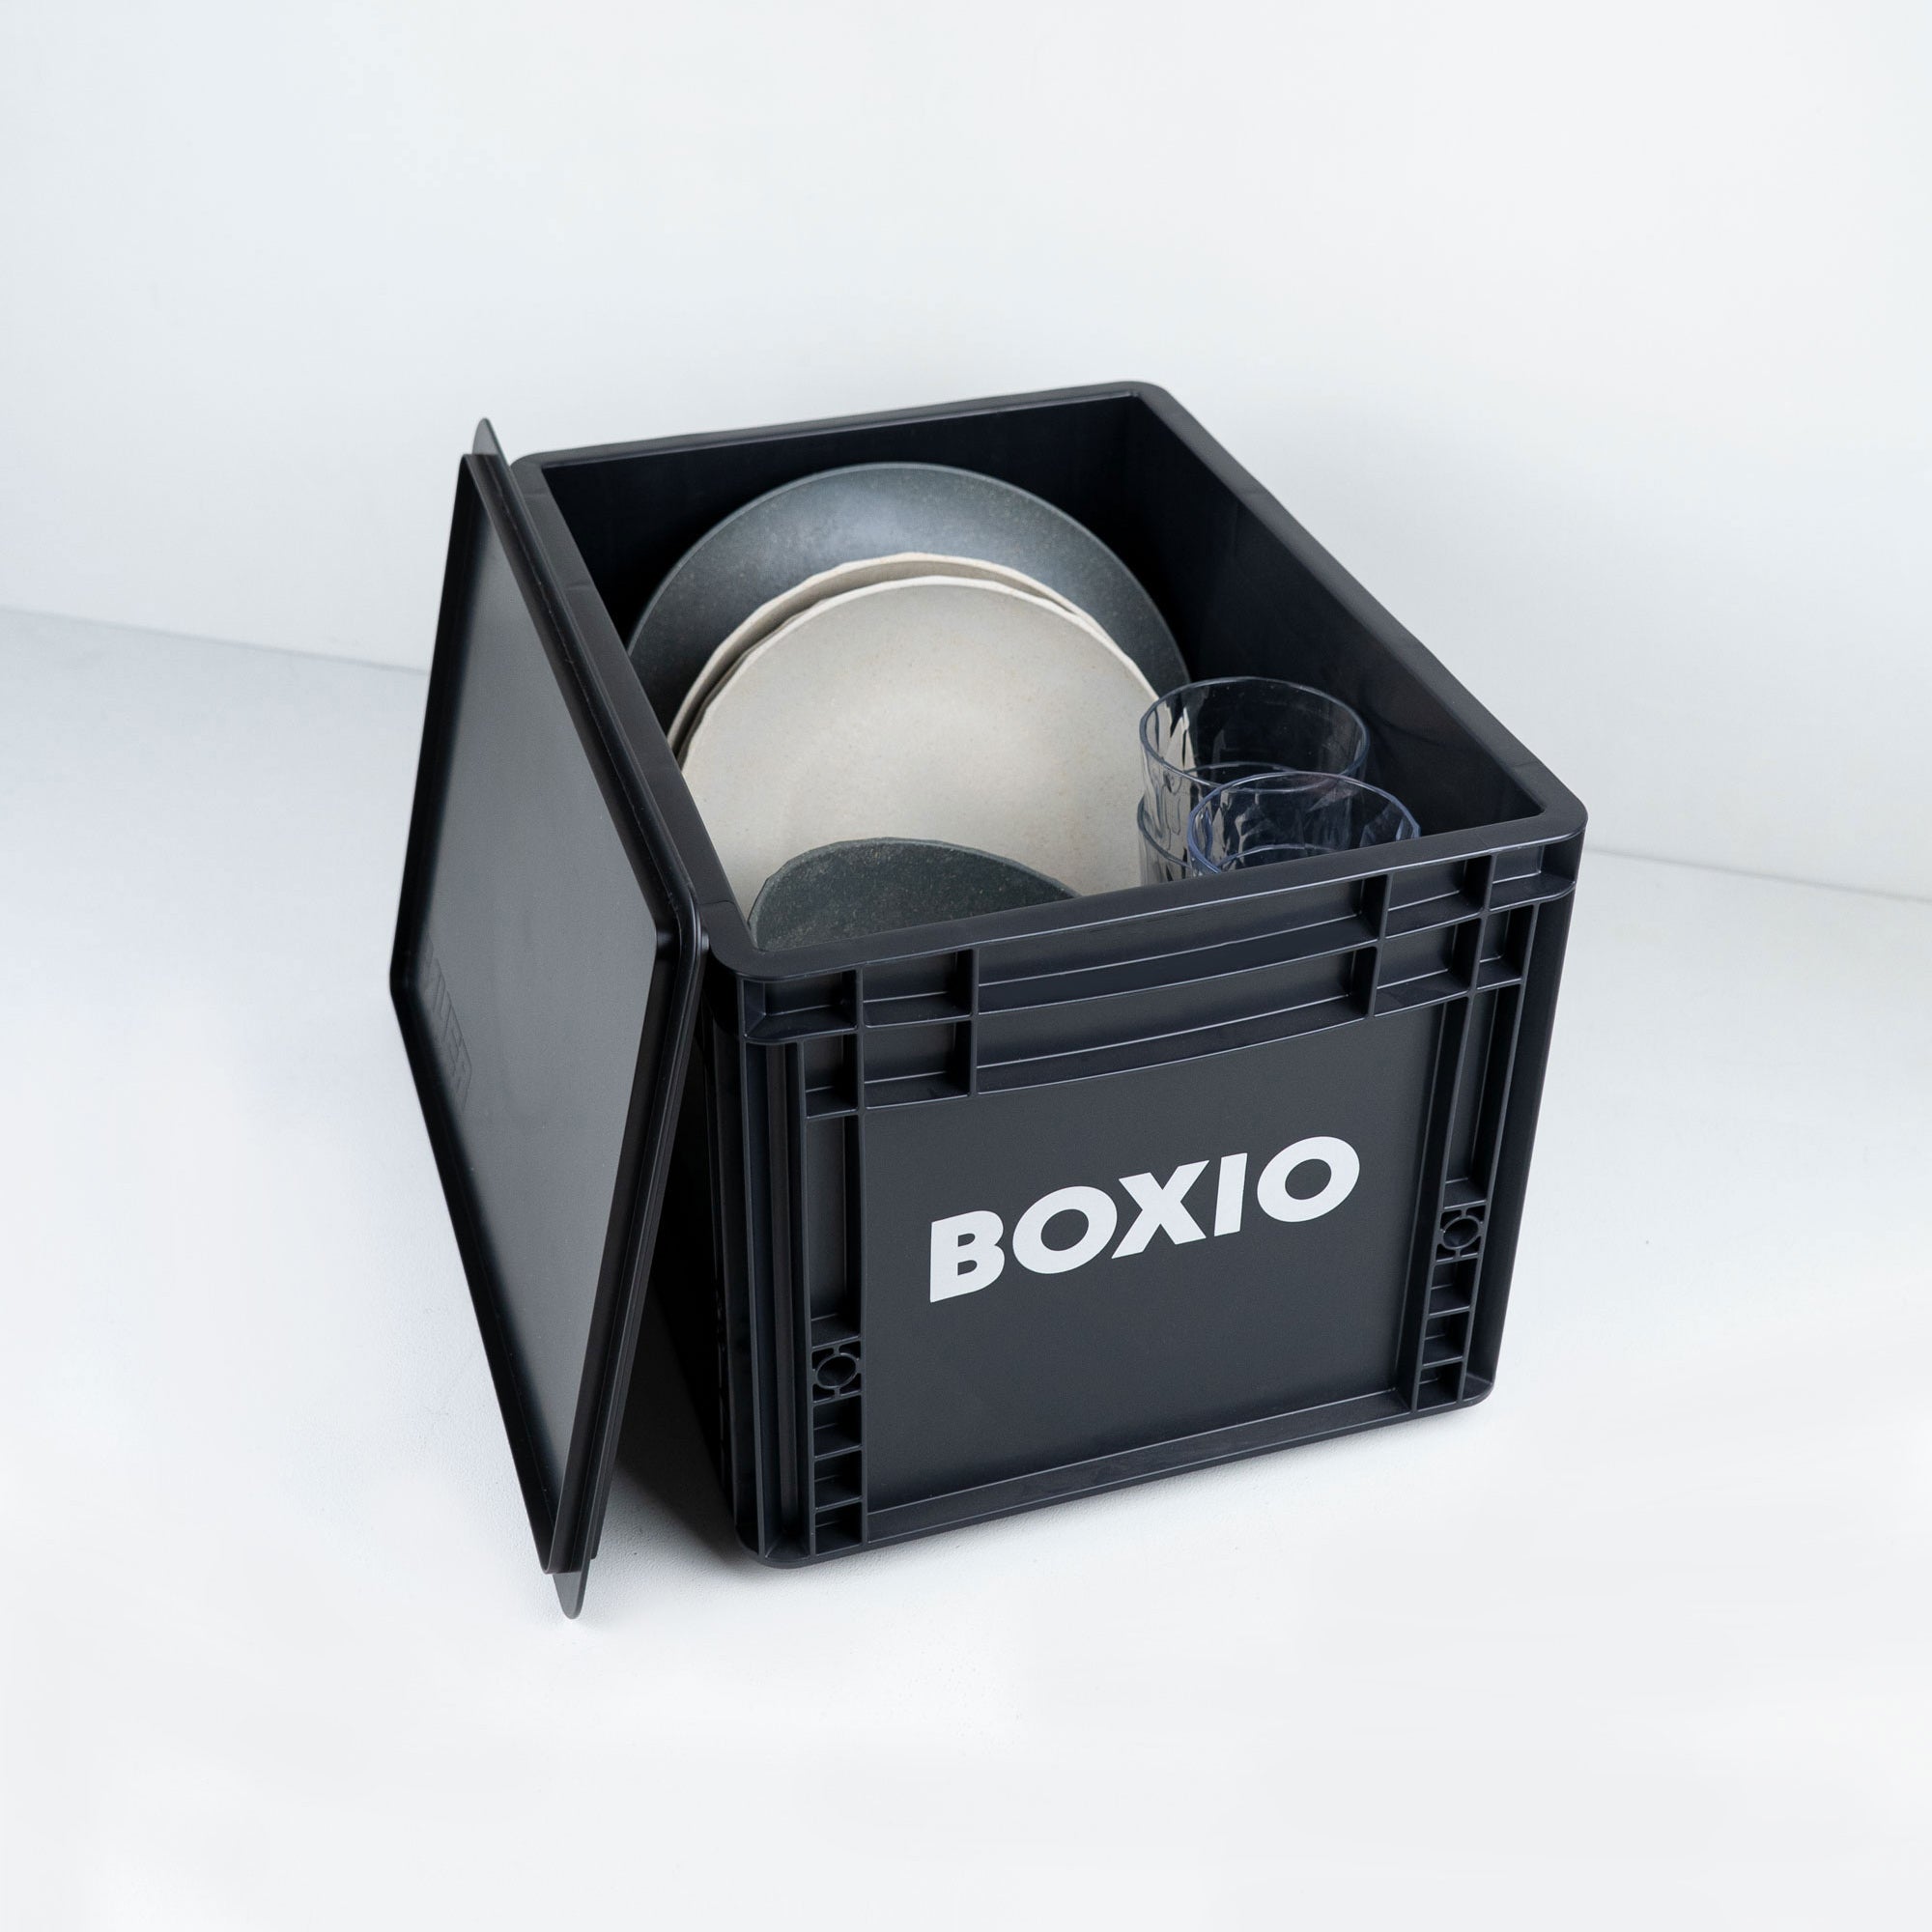 BOXIO - SOLO: Caja de almacenamiento con tapa - Eurobox 40x30 x 28 cm -  caja de transporte de plástico perfecta para camping, barco o jardín -  apilable con otras cajas apilables